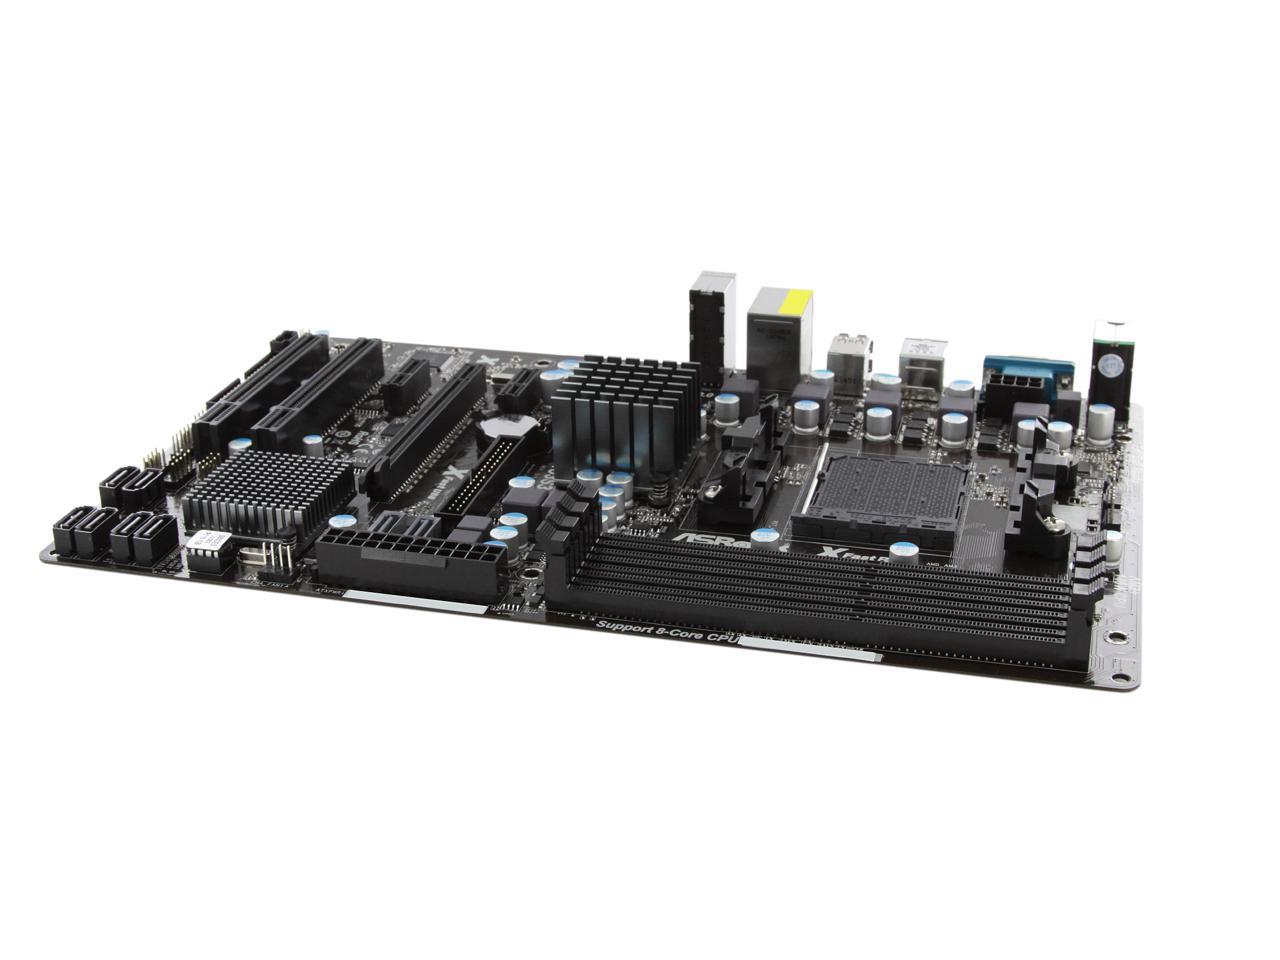 ASRock 980DE3/U3S3 AM3+ ATX AMD Motherboard - Newegg.com